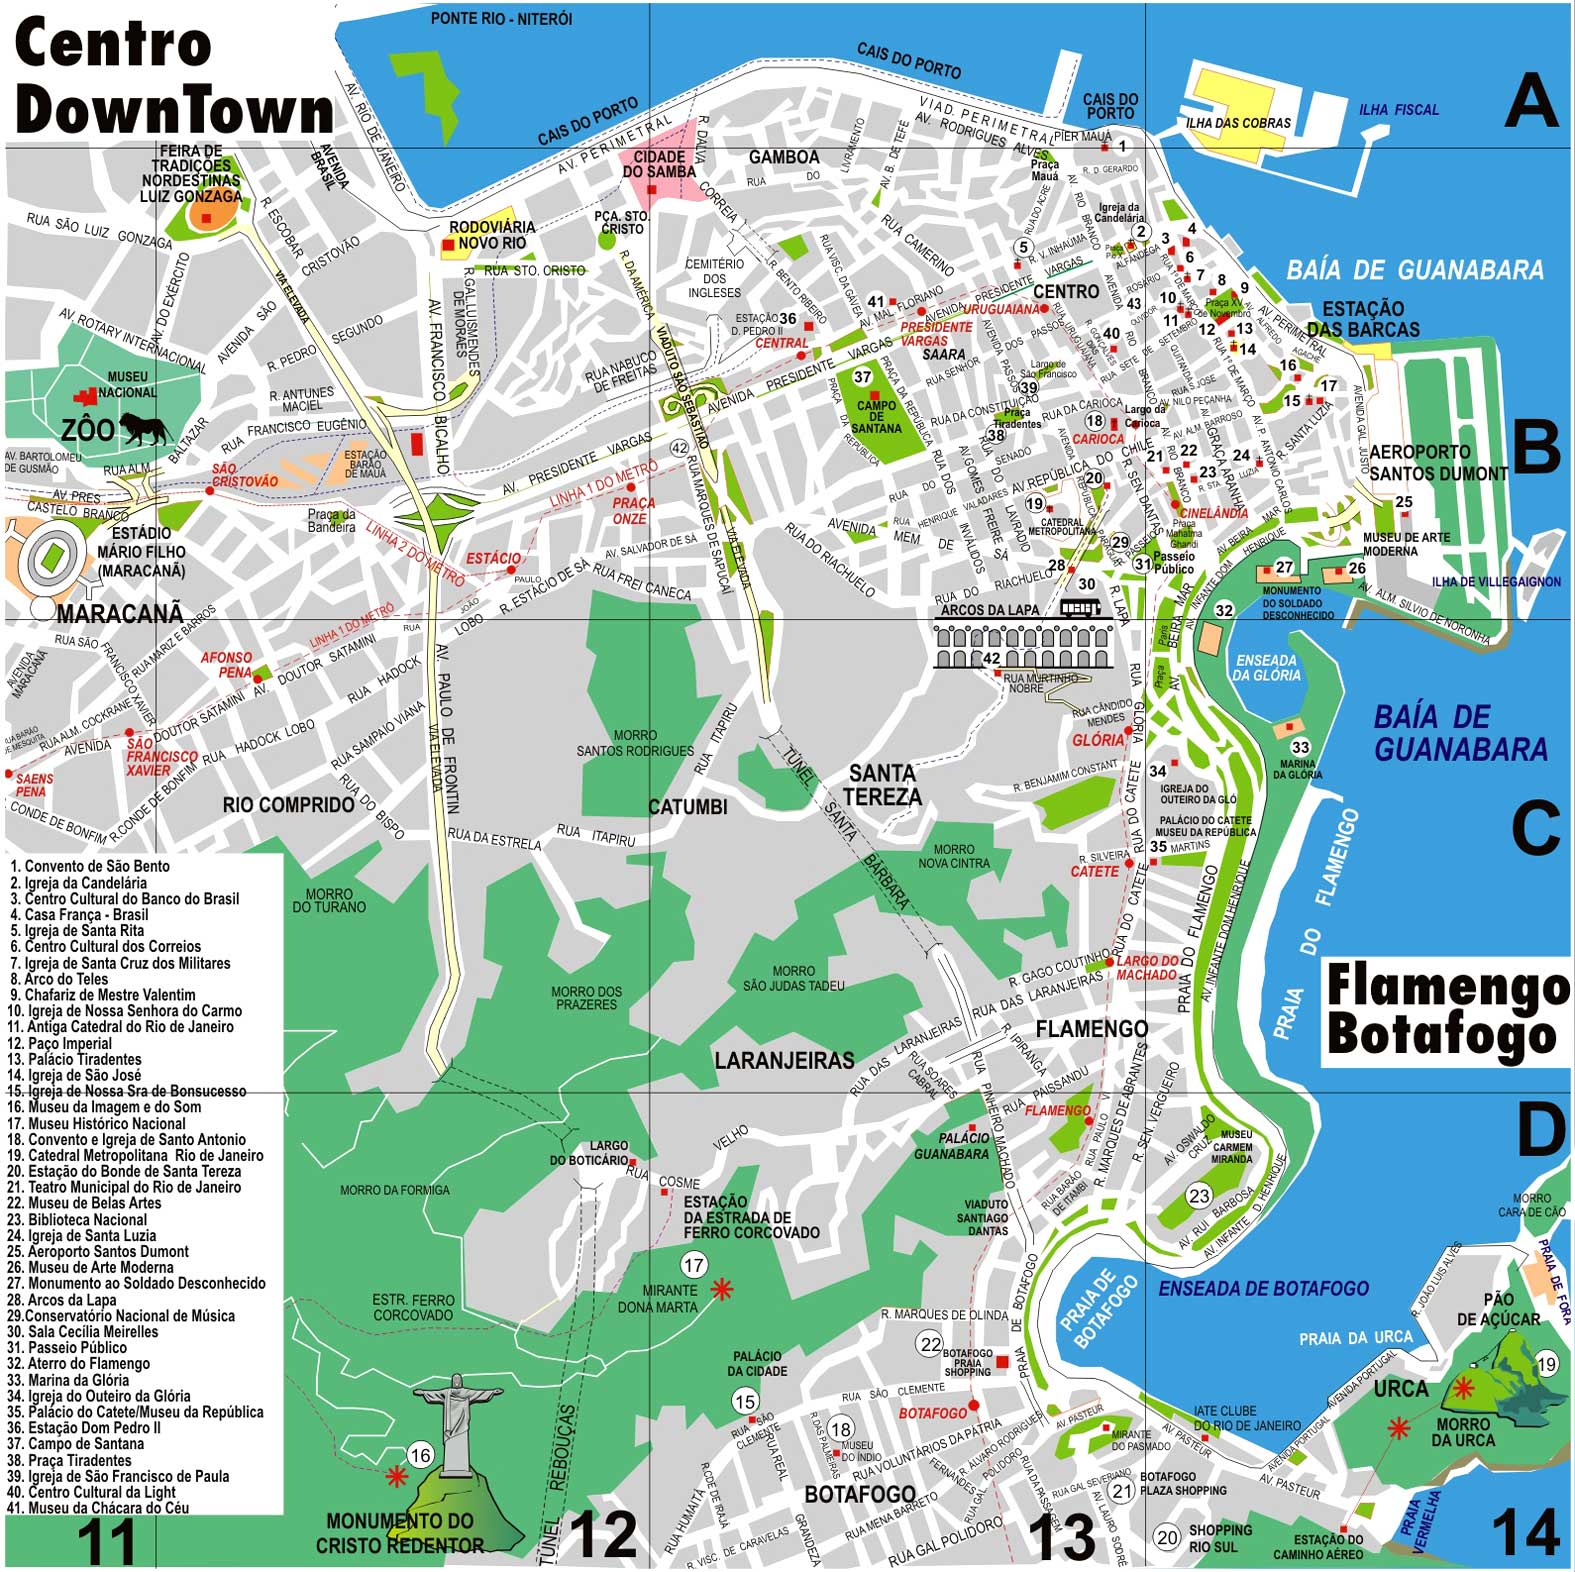 city center map of rio de janeiro